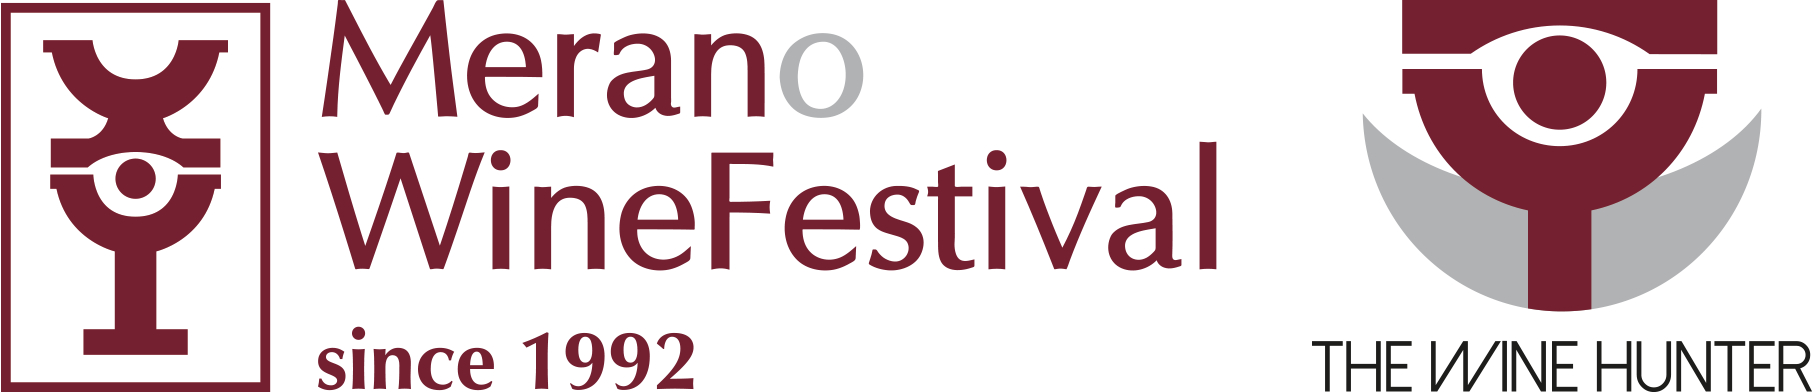 merano winefestival winehunter combined logo